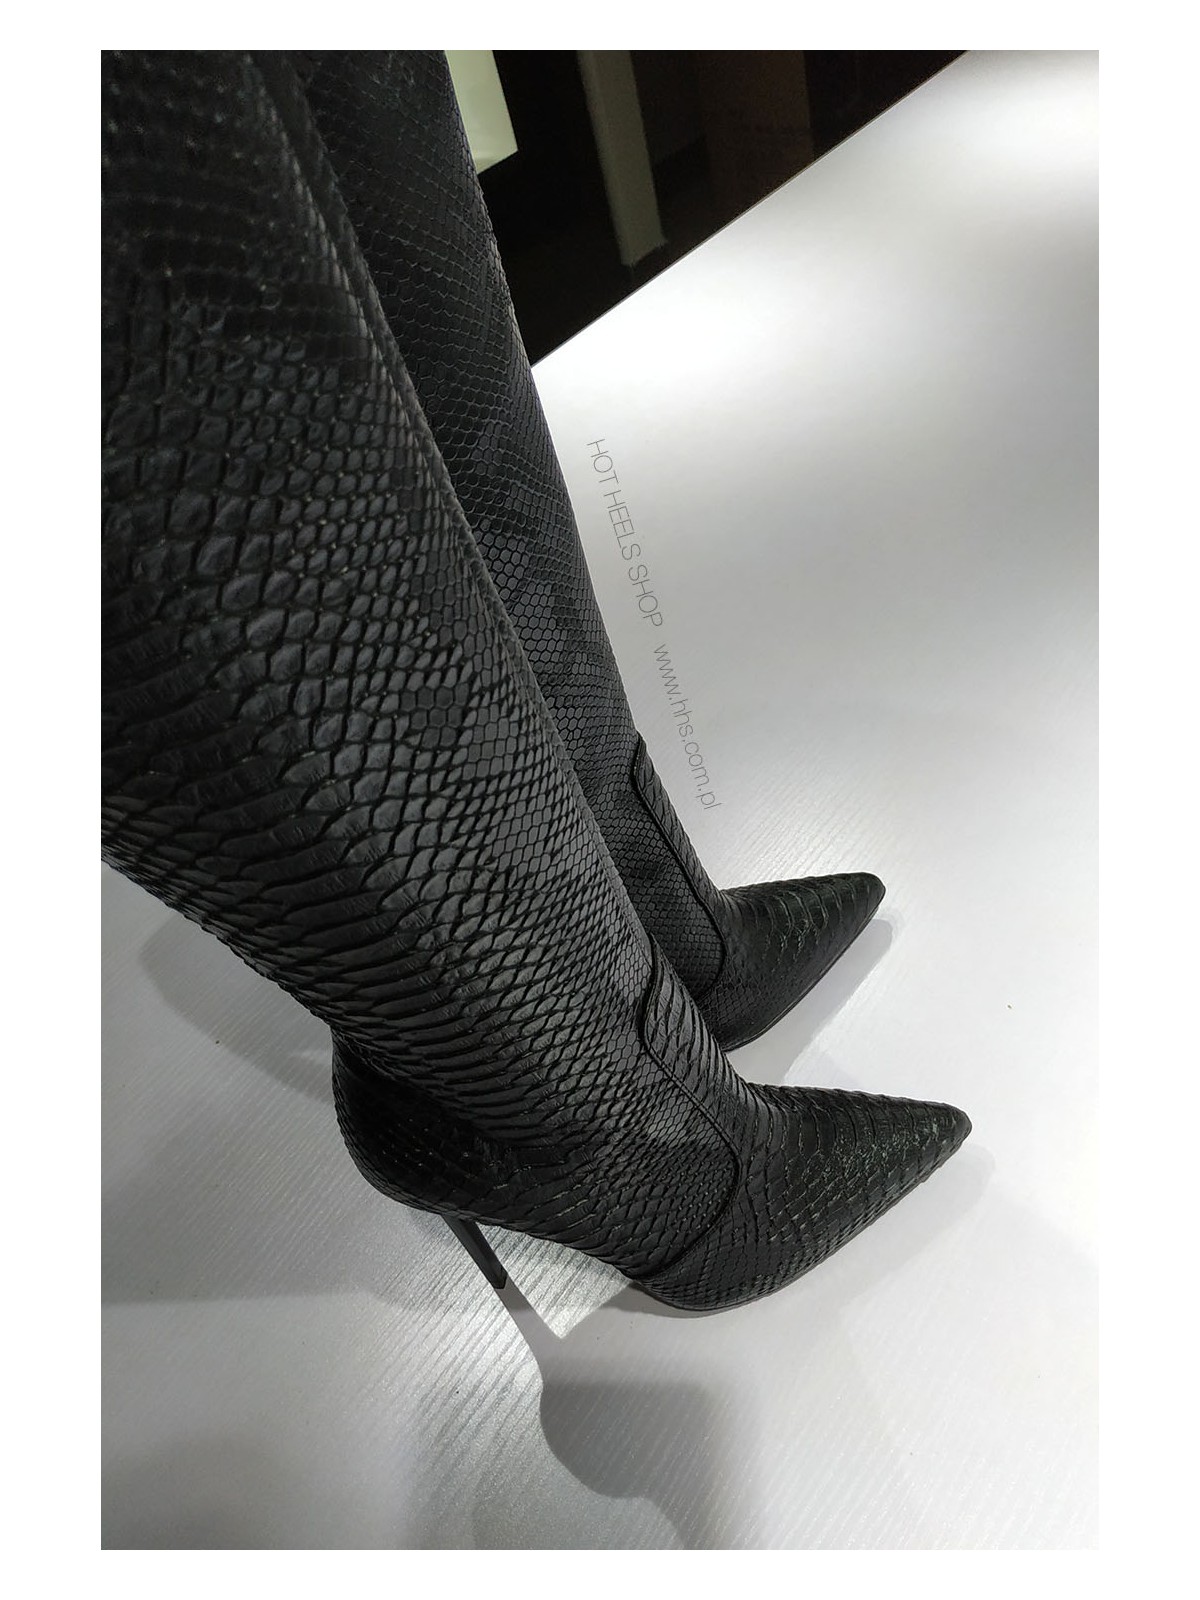 Italian leather, stiletto heels